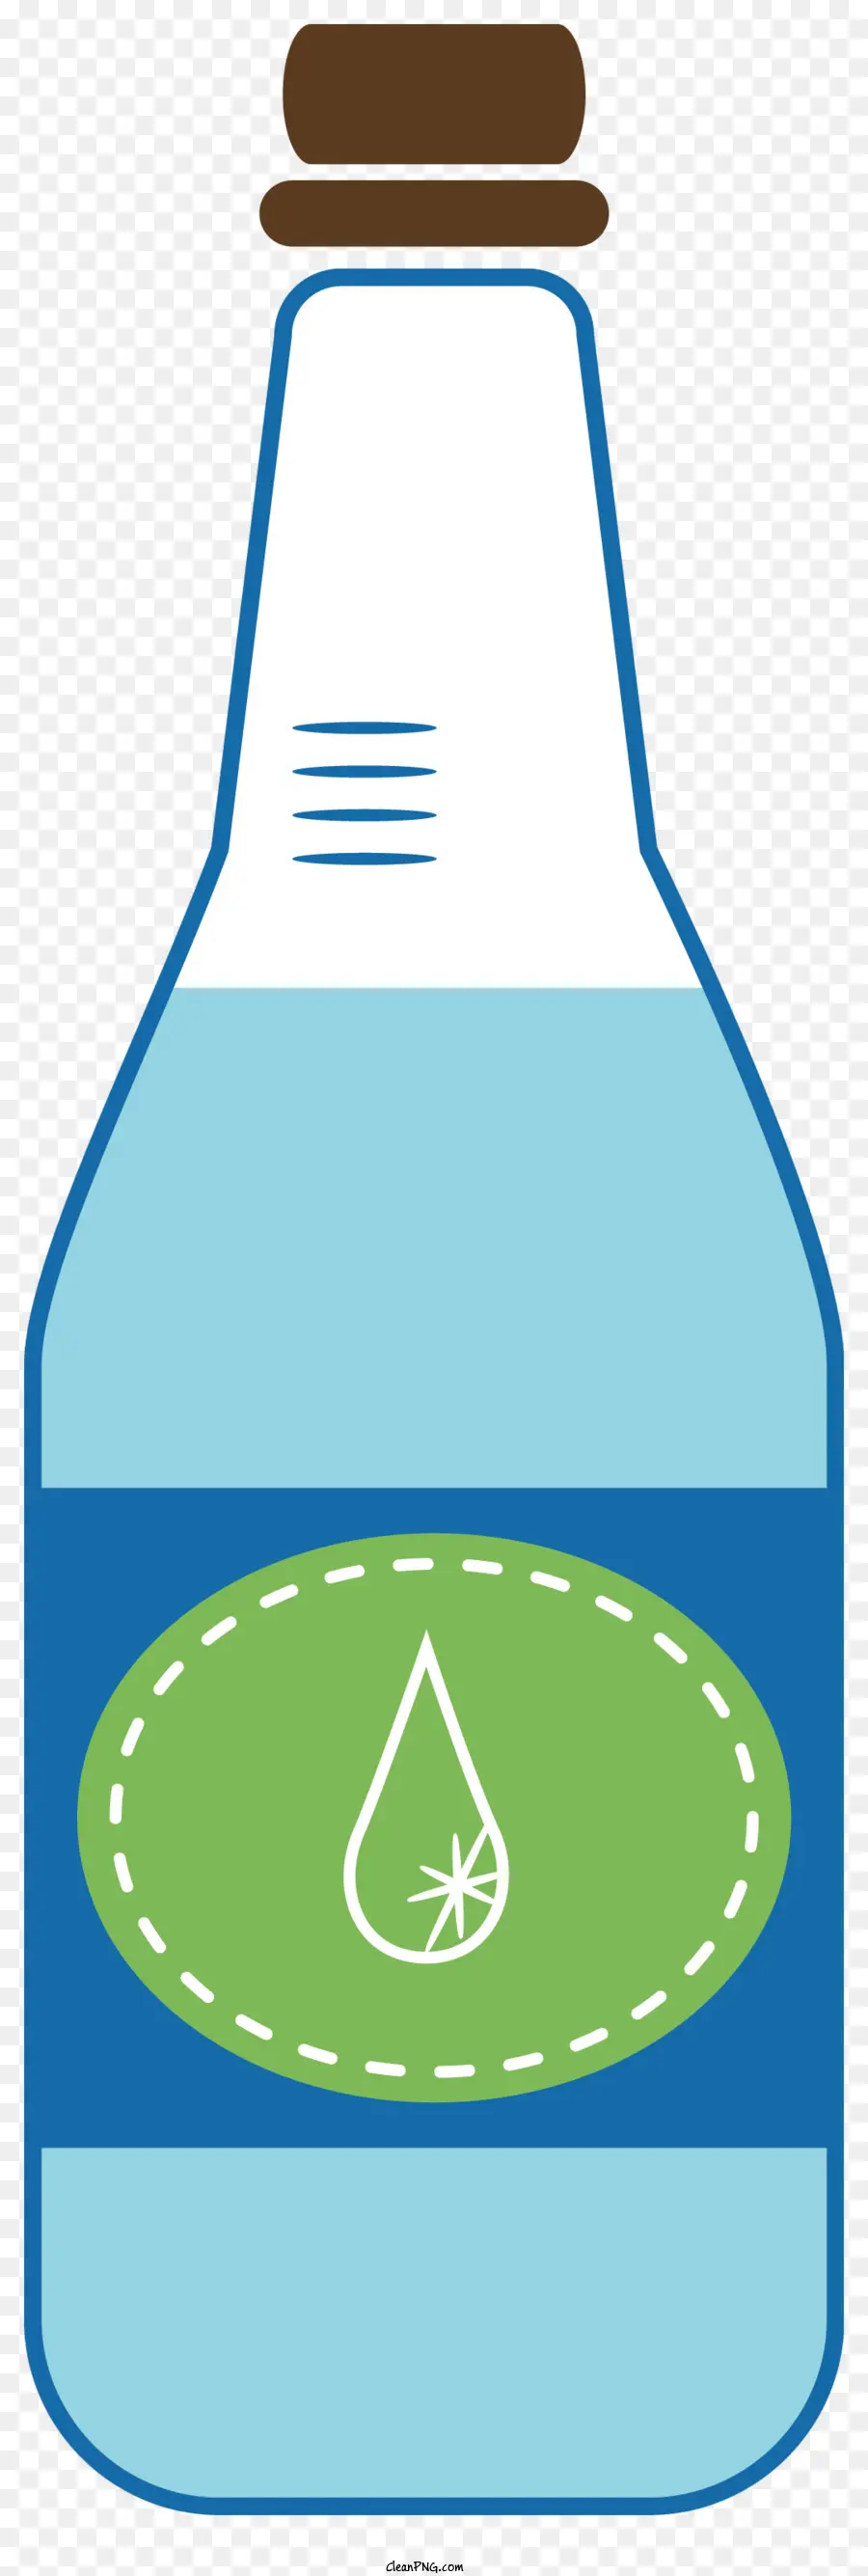 chai nhựa - Nước trong chai nhựa có nắp màu xanh lá cây